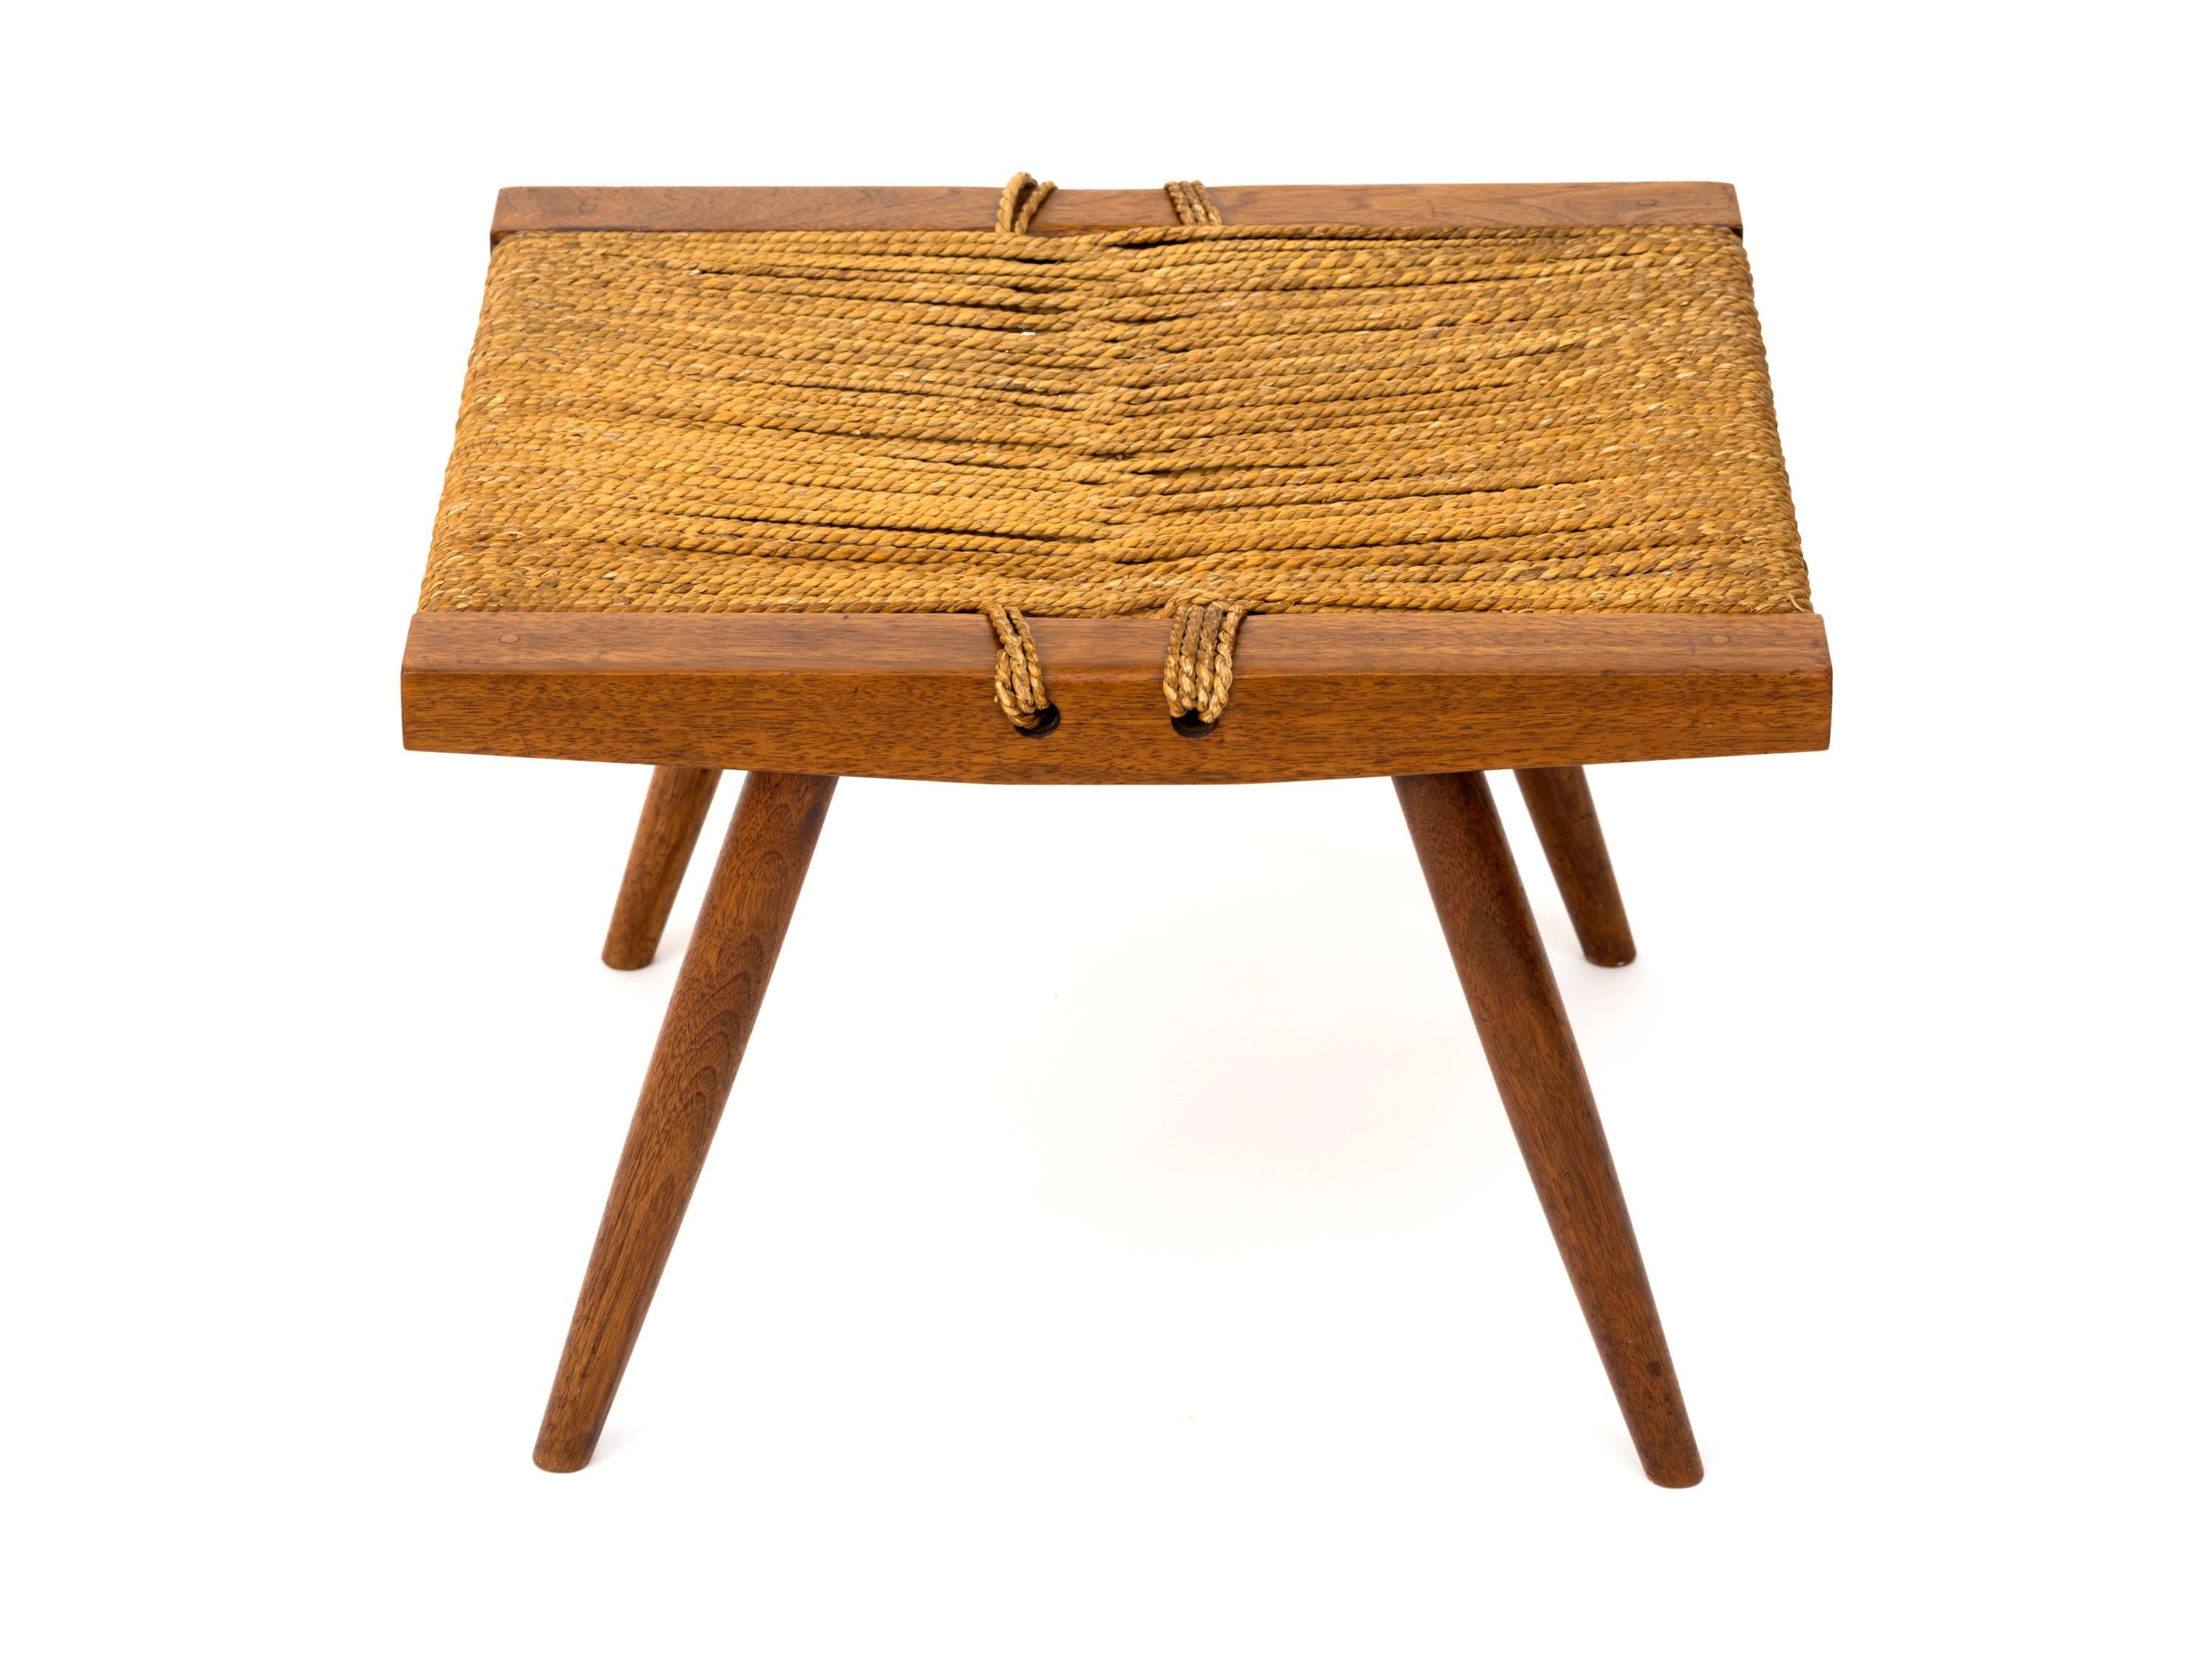 woven seat stool